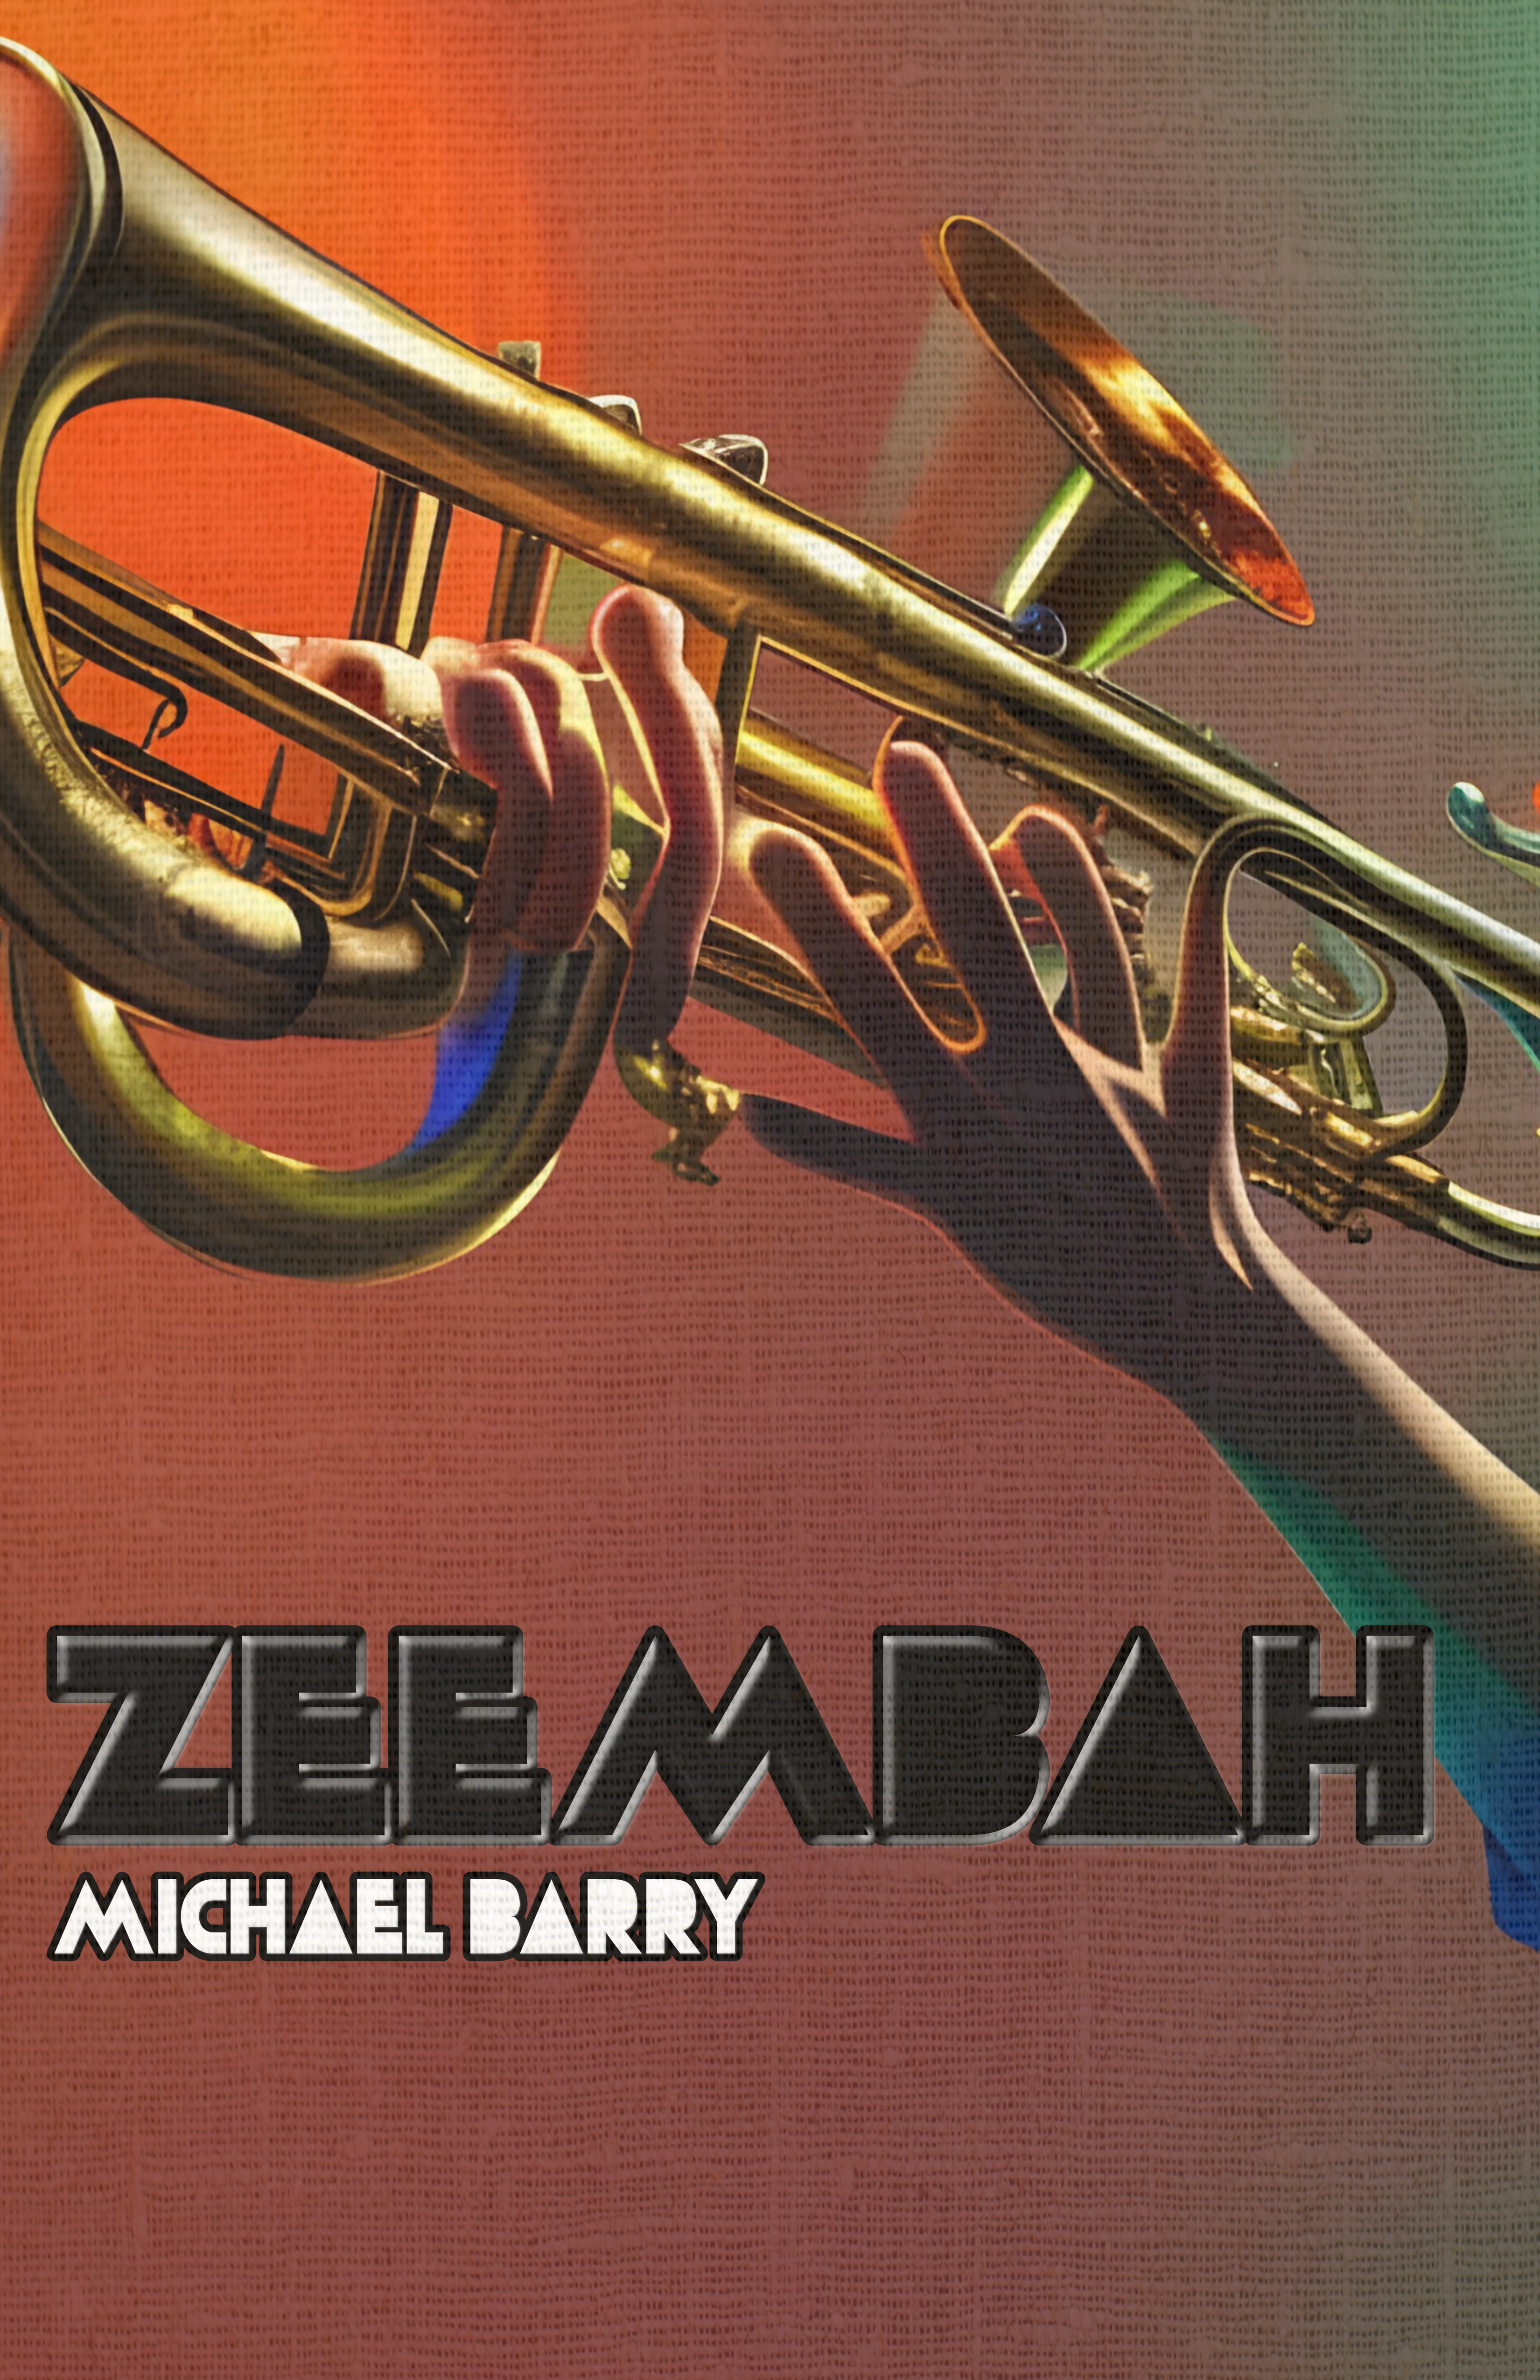 Zeembah by Michael Barry